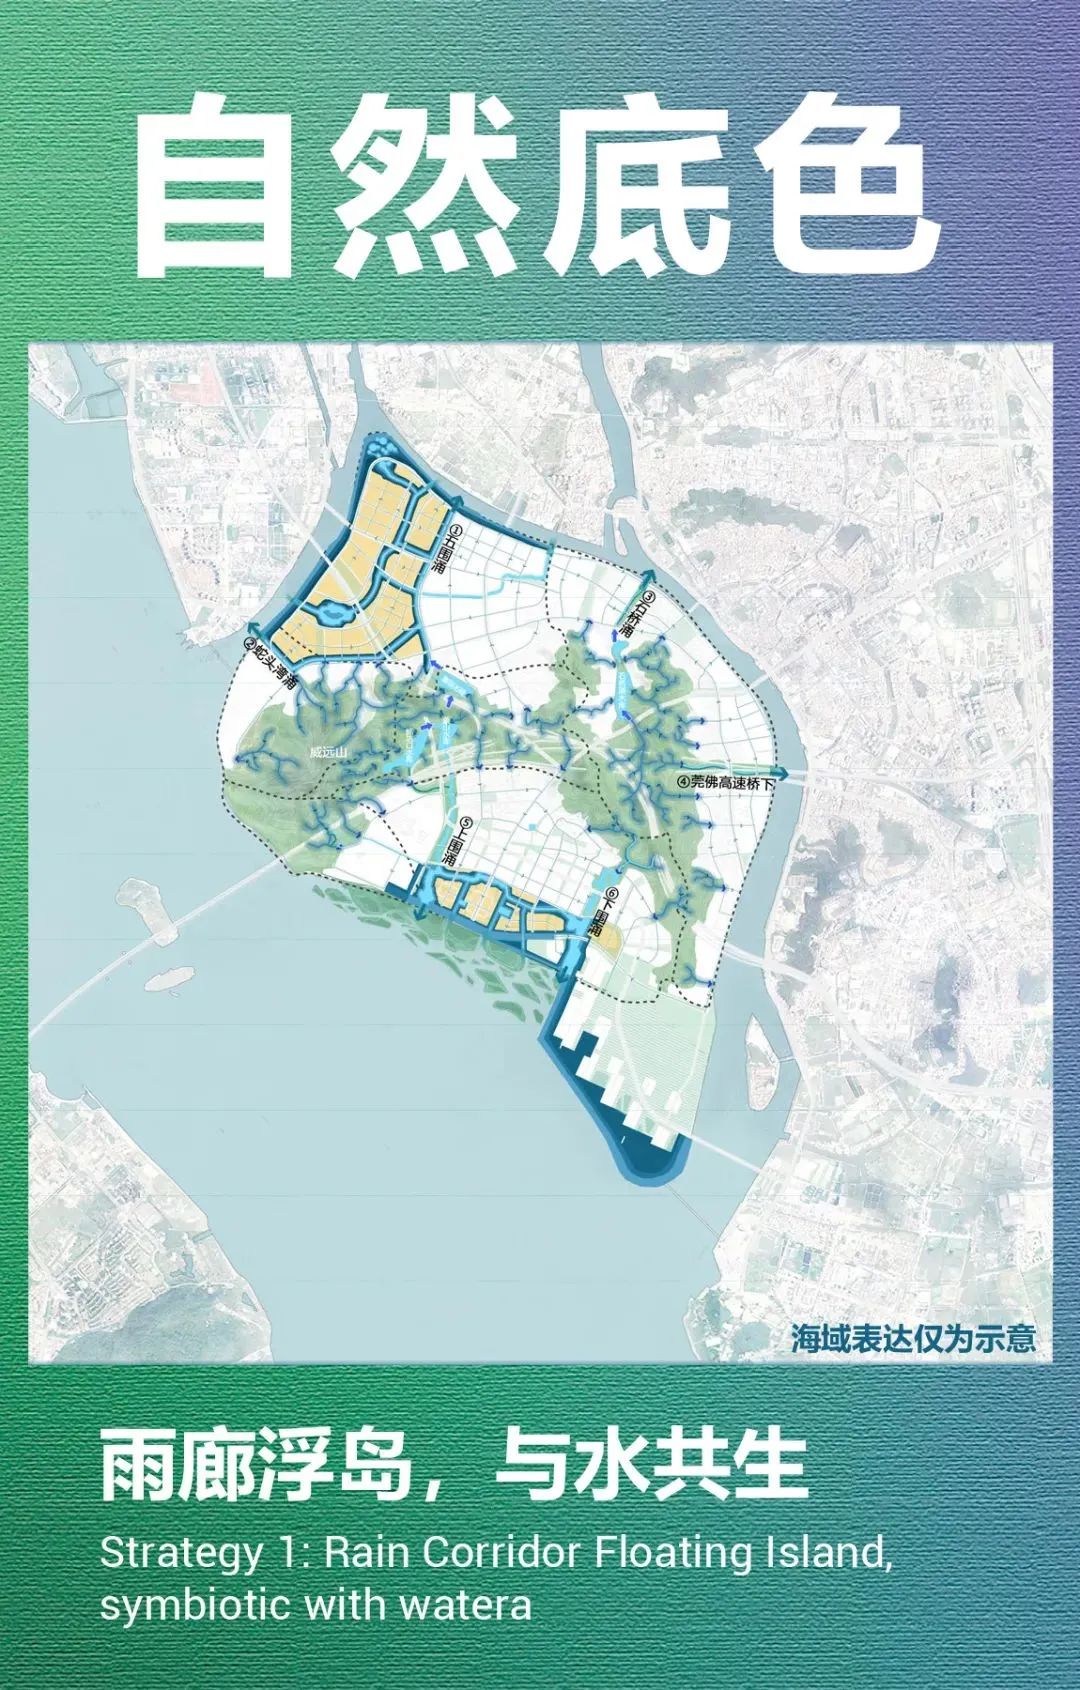 喜讯 | SOM+华工院+粤规院获得东莞滨海湾新区威远岛重点地段城市设计国际竞赛第一名